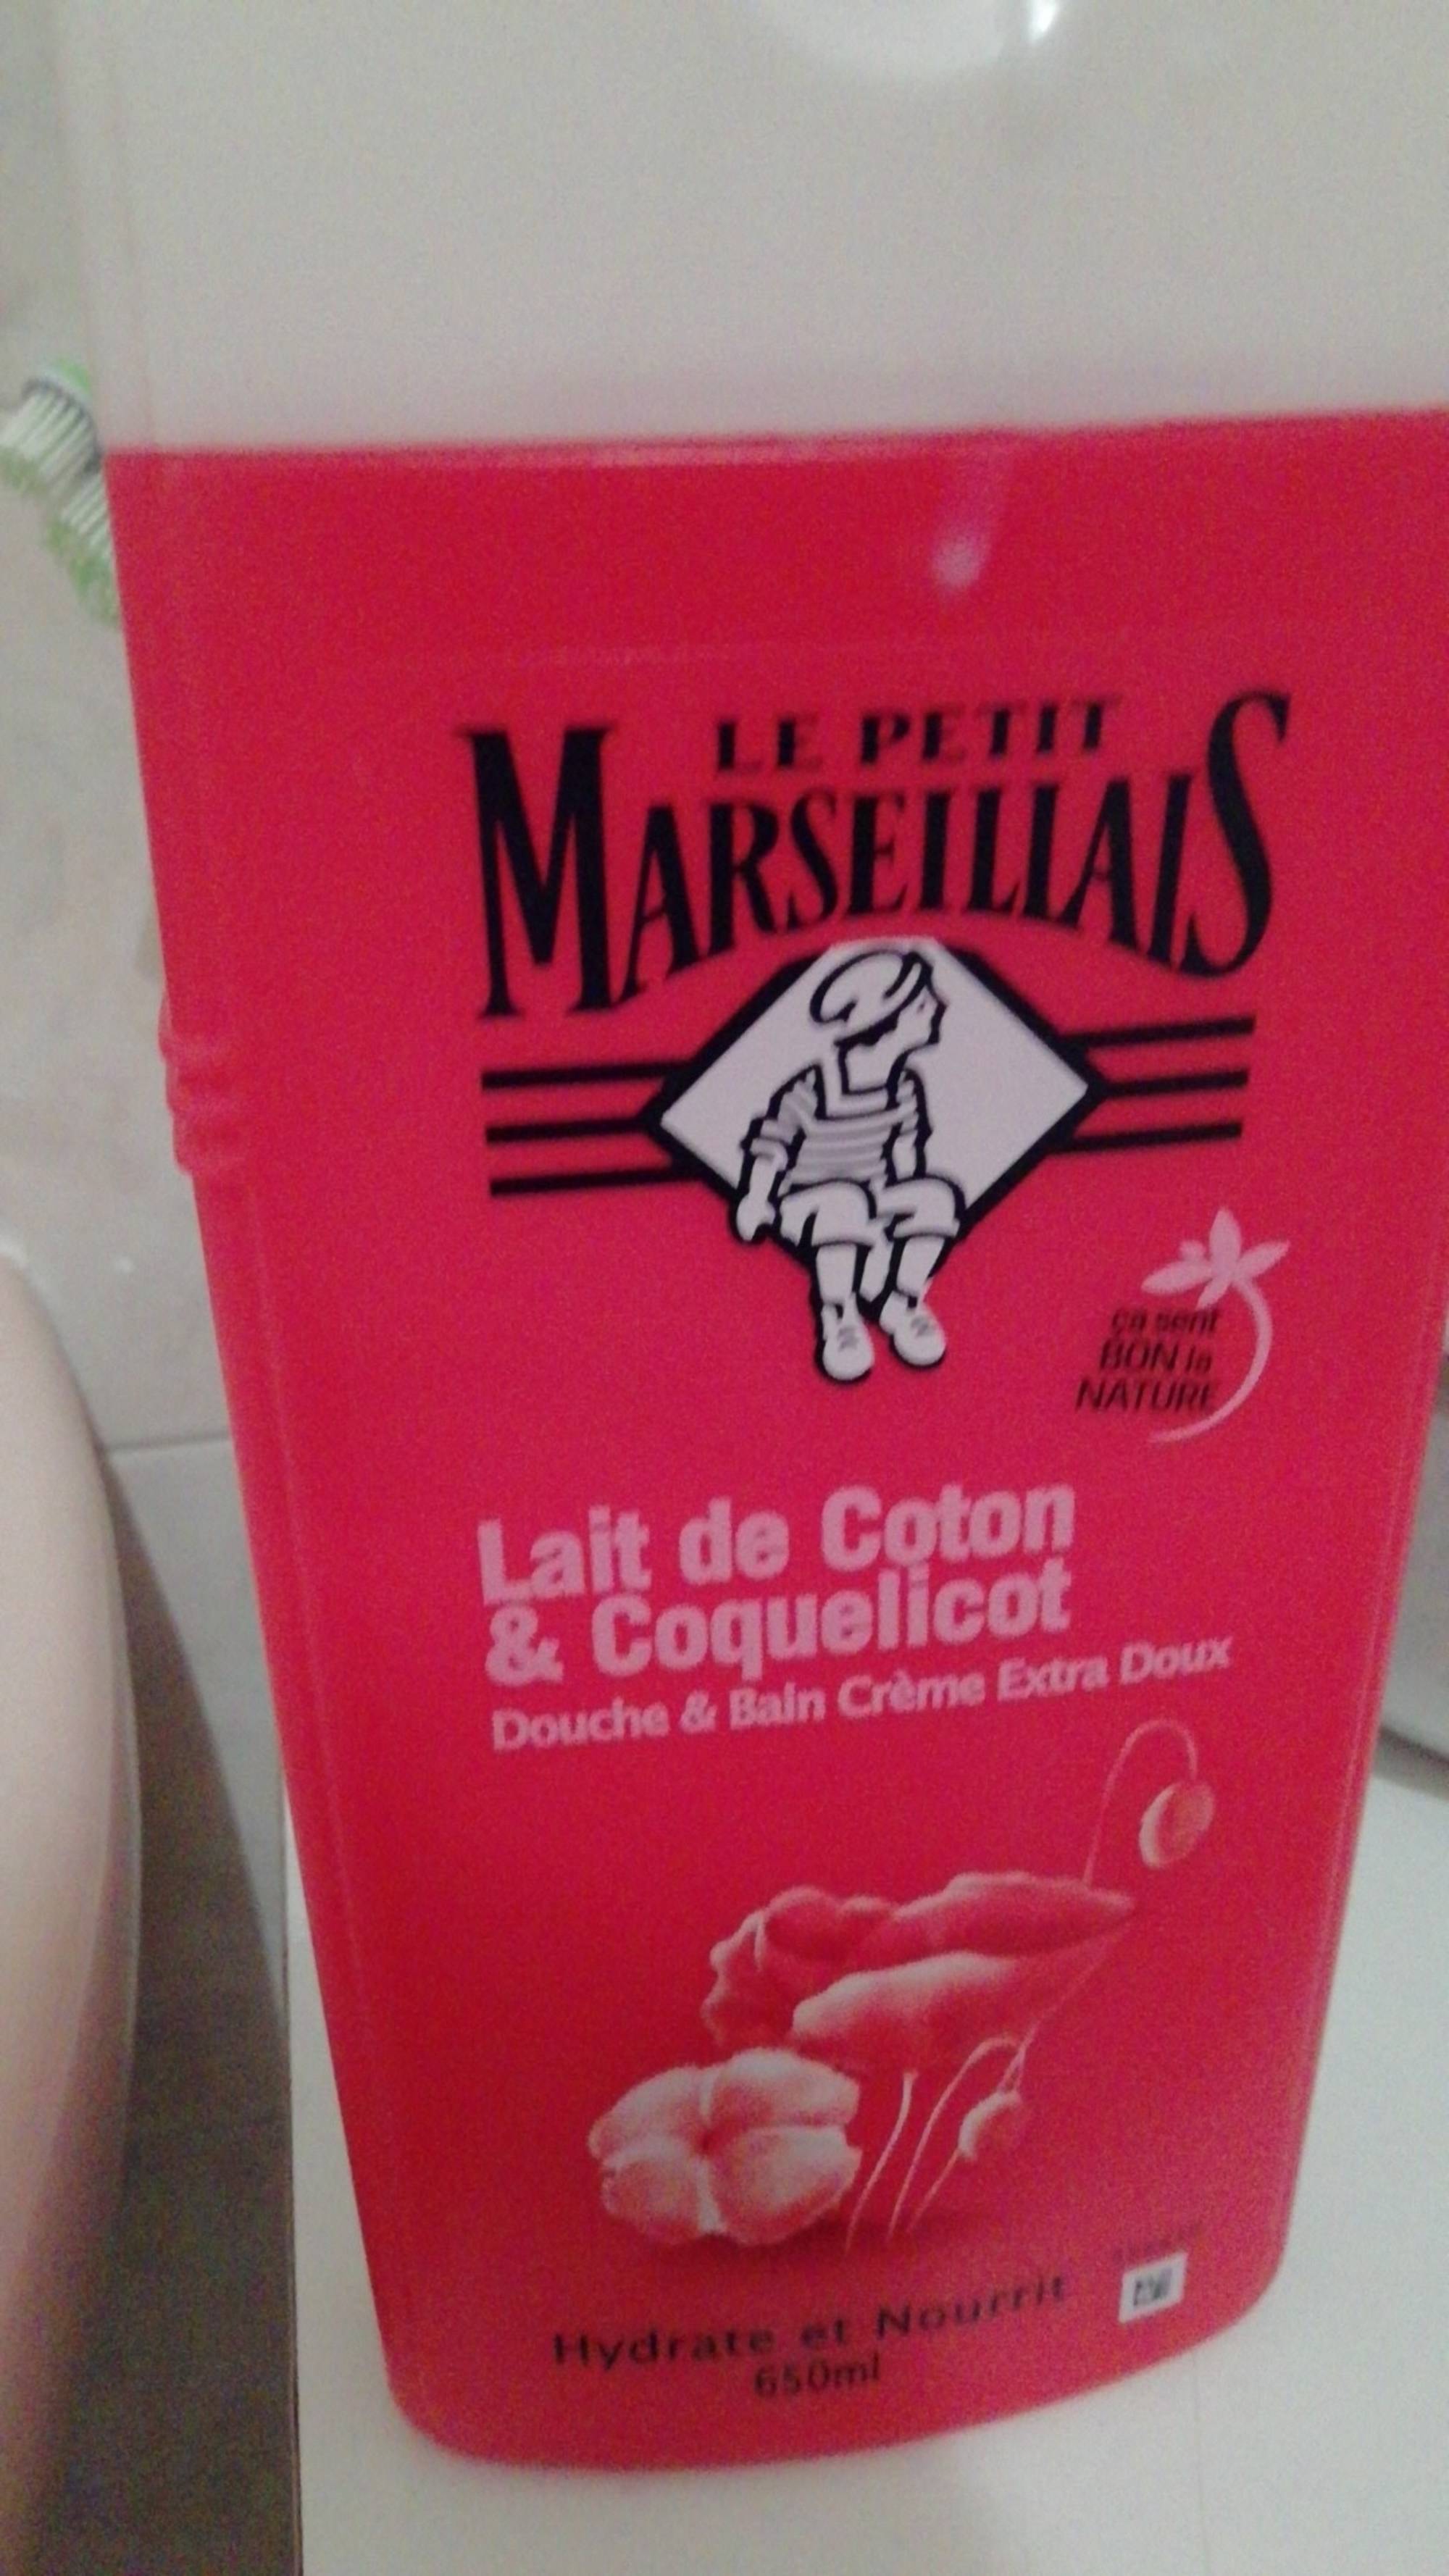 LE PETIT MARSEILLAIS - Lait de coton & coquelicot - Douche et bain crème extra doux